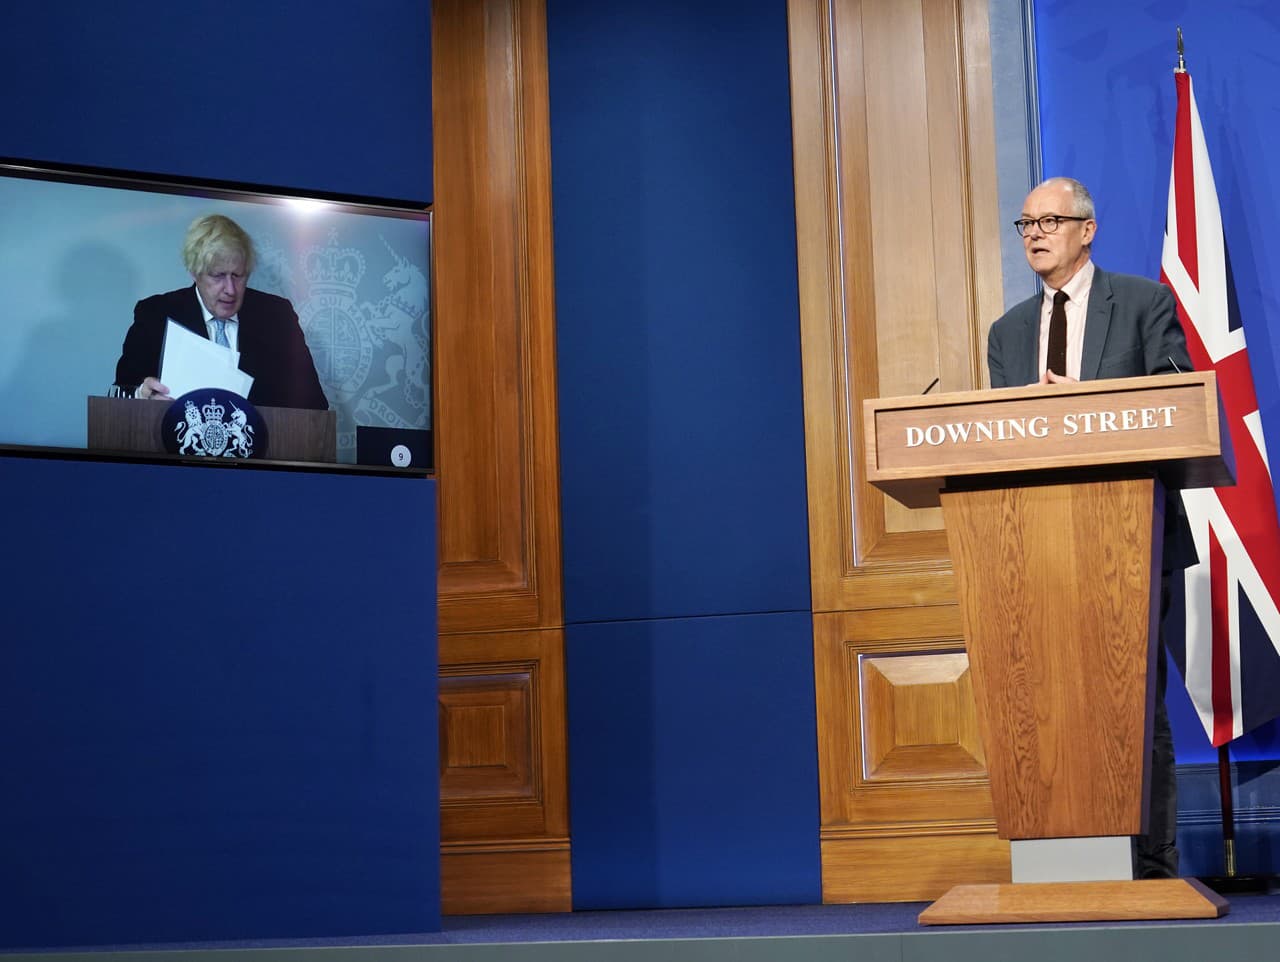 Hlavný vedecký poradca britskej vlády Patrick Vallance (vpravo) a britský premiér Boris Johnson, ktorý je na televíznej obrazovke z dôvodu domácej izolácie.